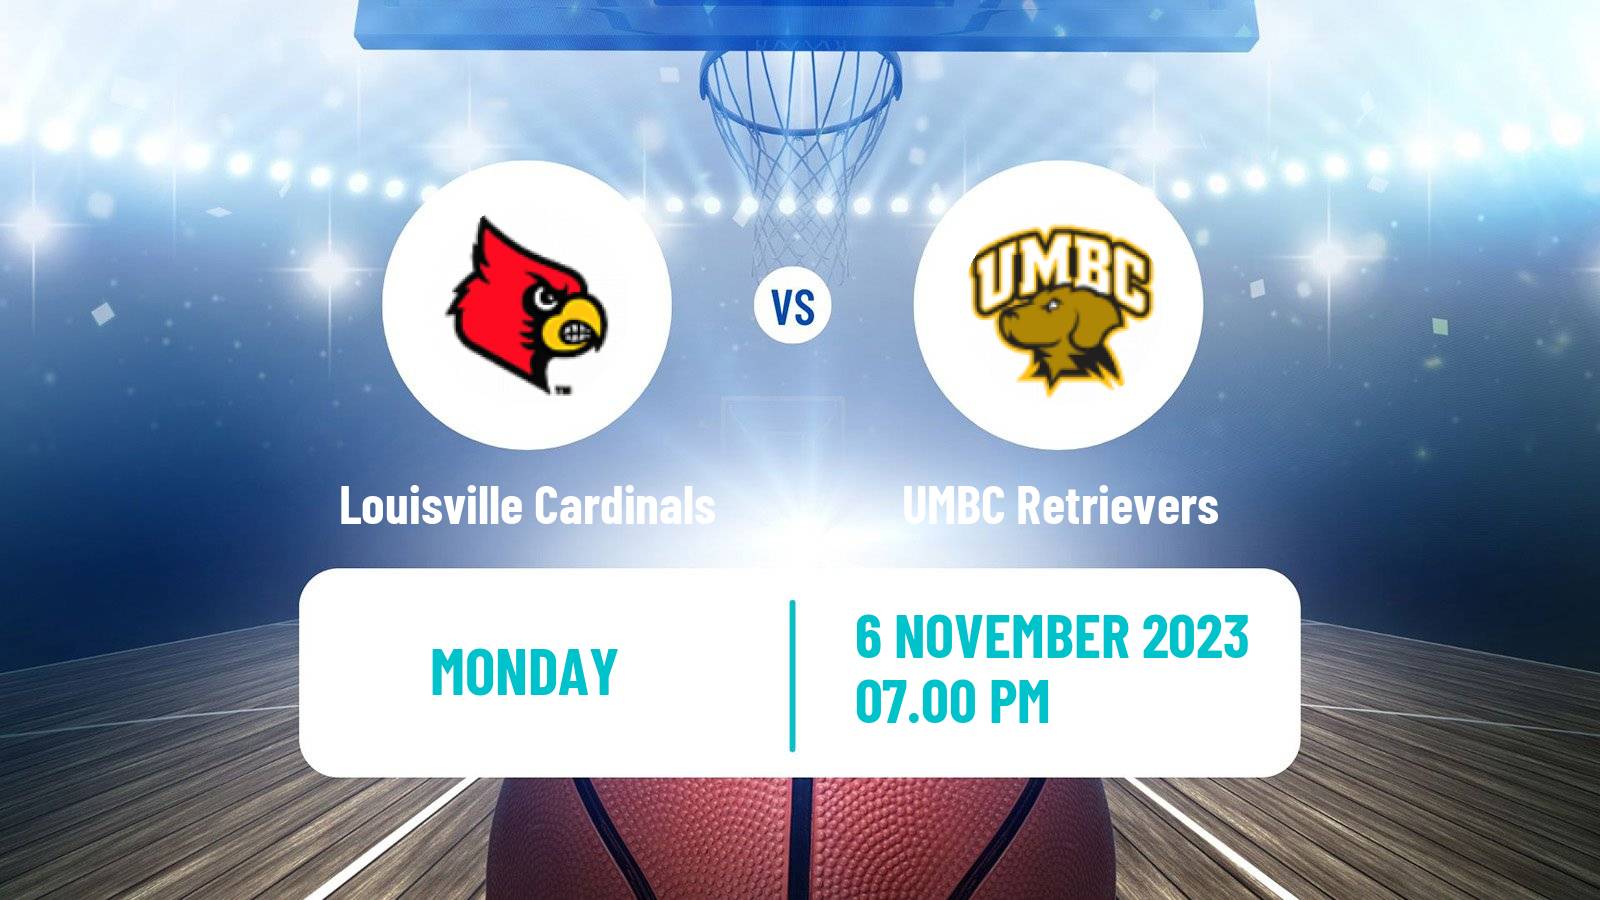 Basketball NCAA College Basketball Louisville Cardinals - UMBC Retrievers